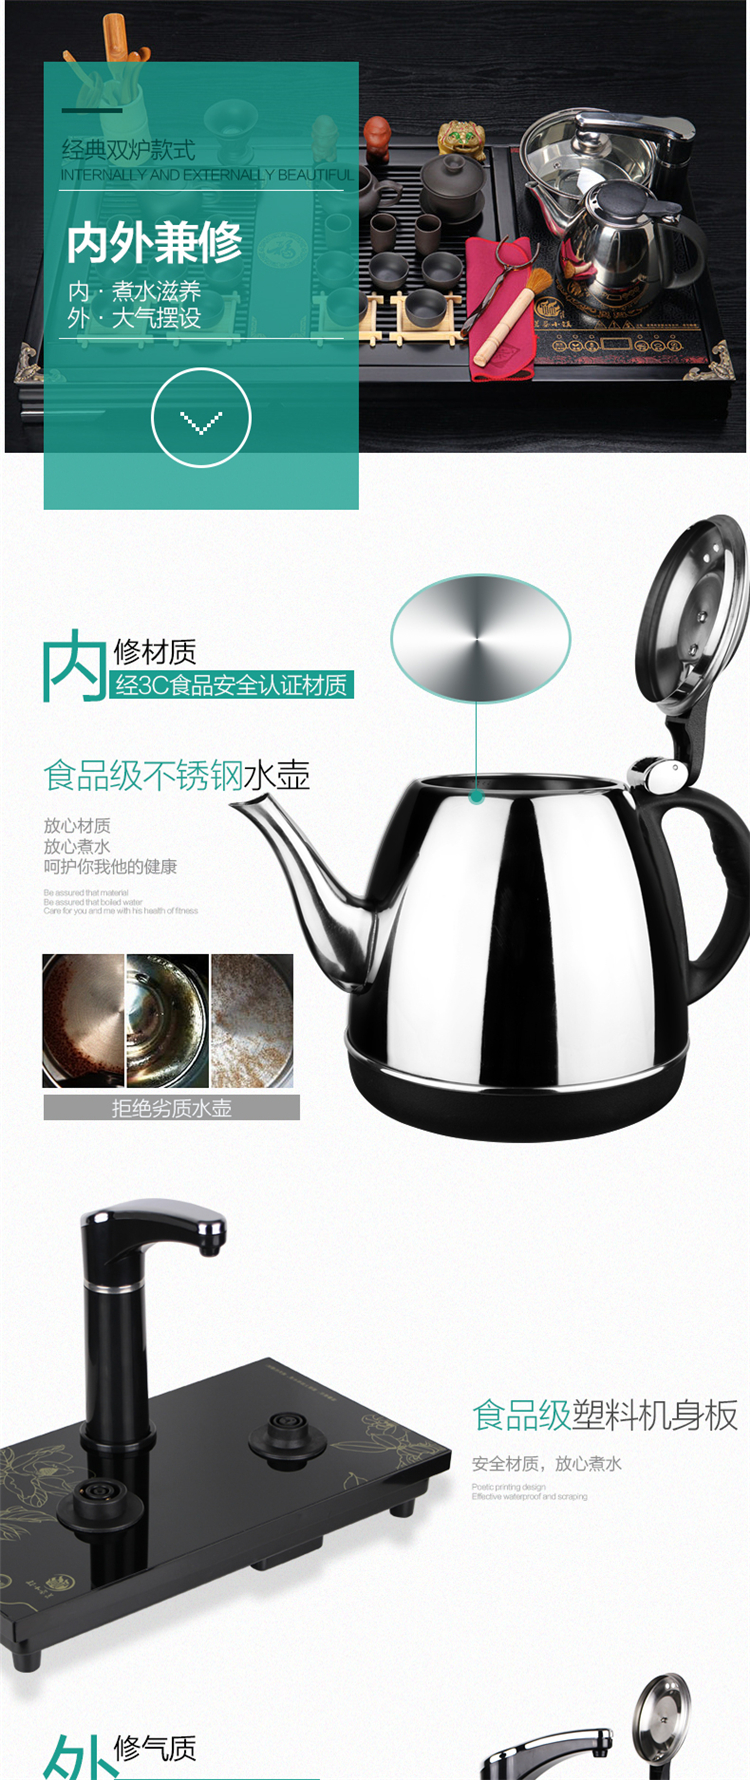 茗茶小镇 DR1201自动上水电热茶壶电热水壶烧水壶茶具三合一套装